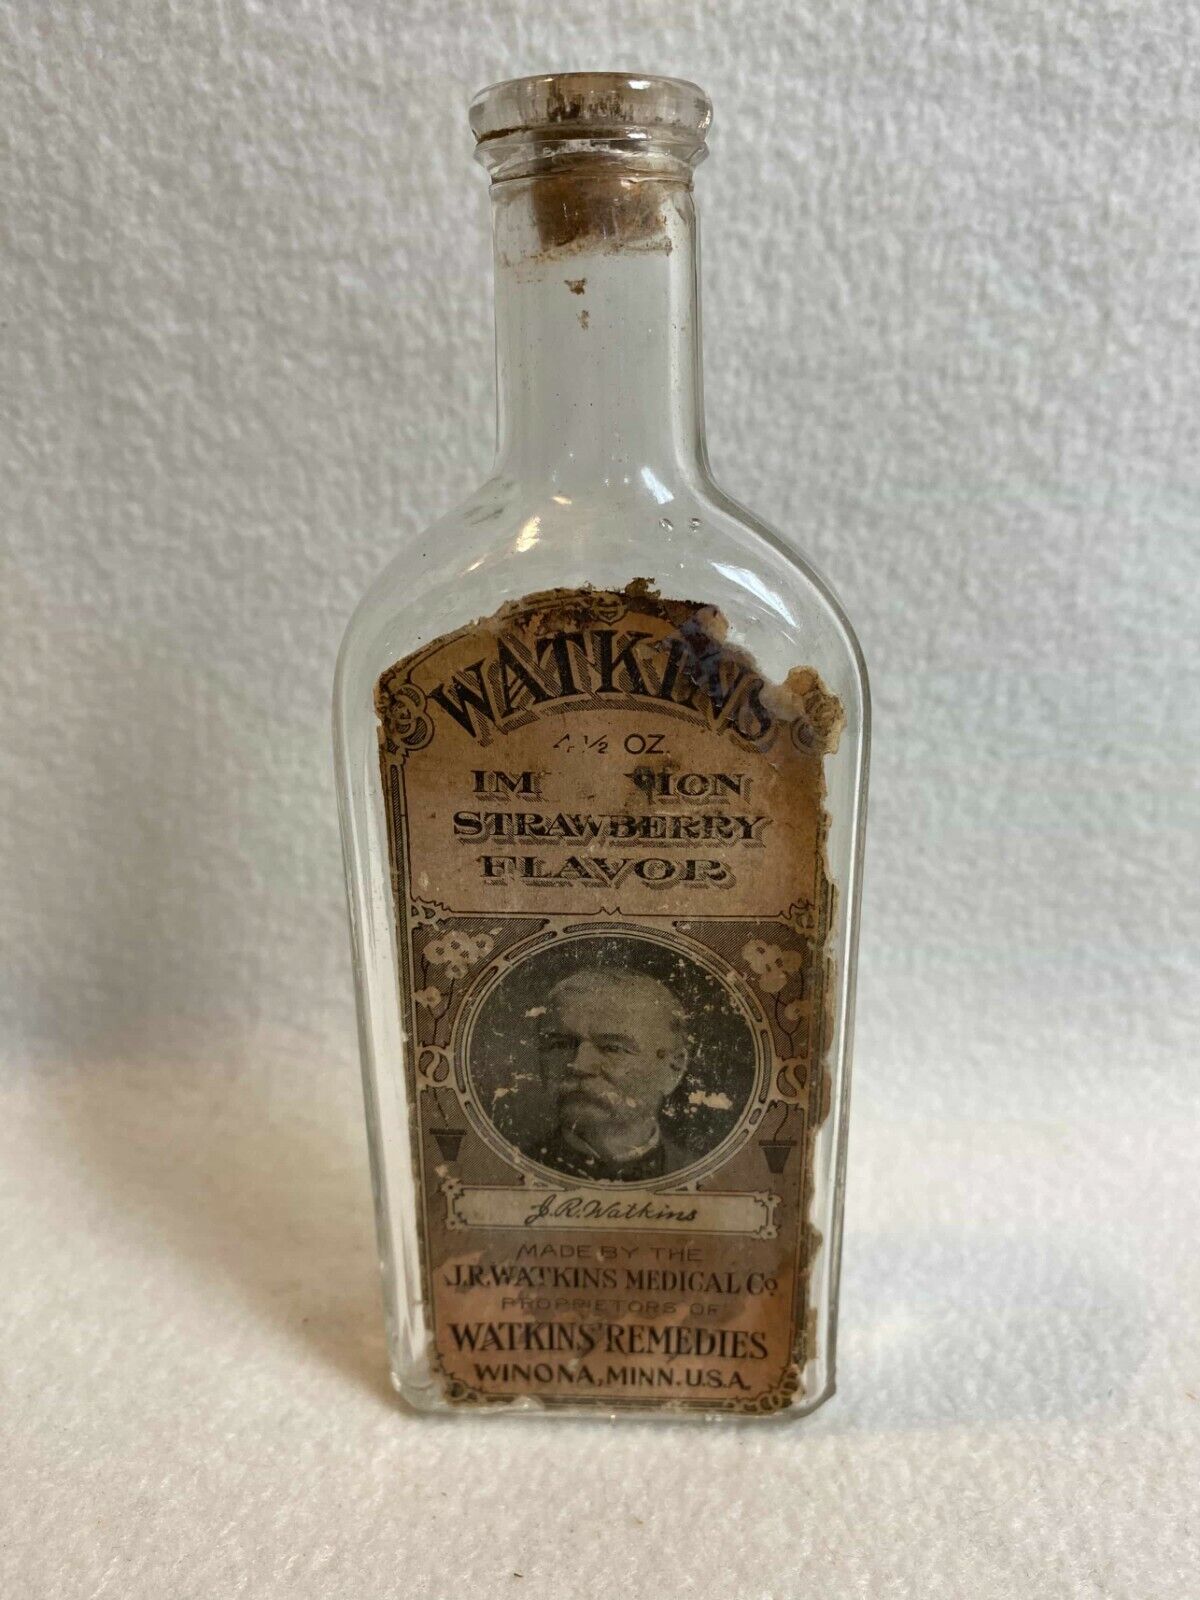 Vtg J.R. Watkins Med Co/Watkins Remedies - 4.5 oz Strawberry Bottle for Display